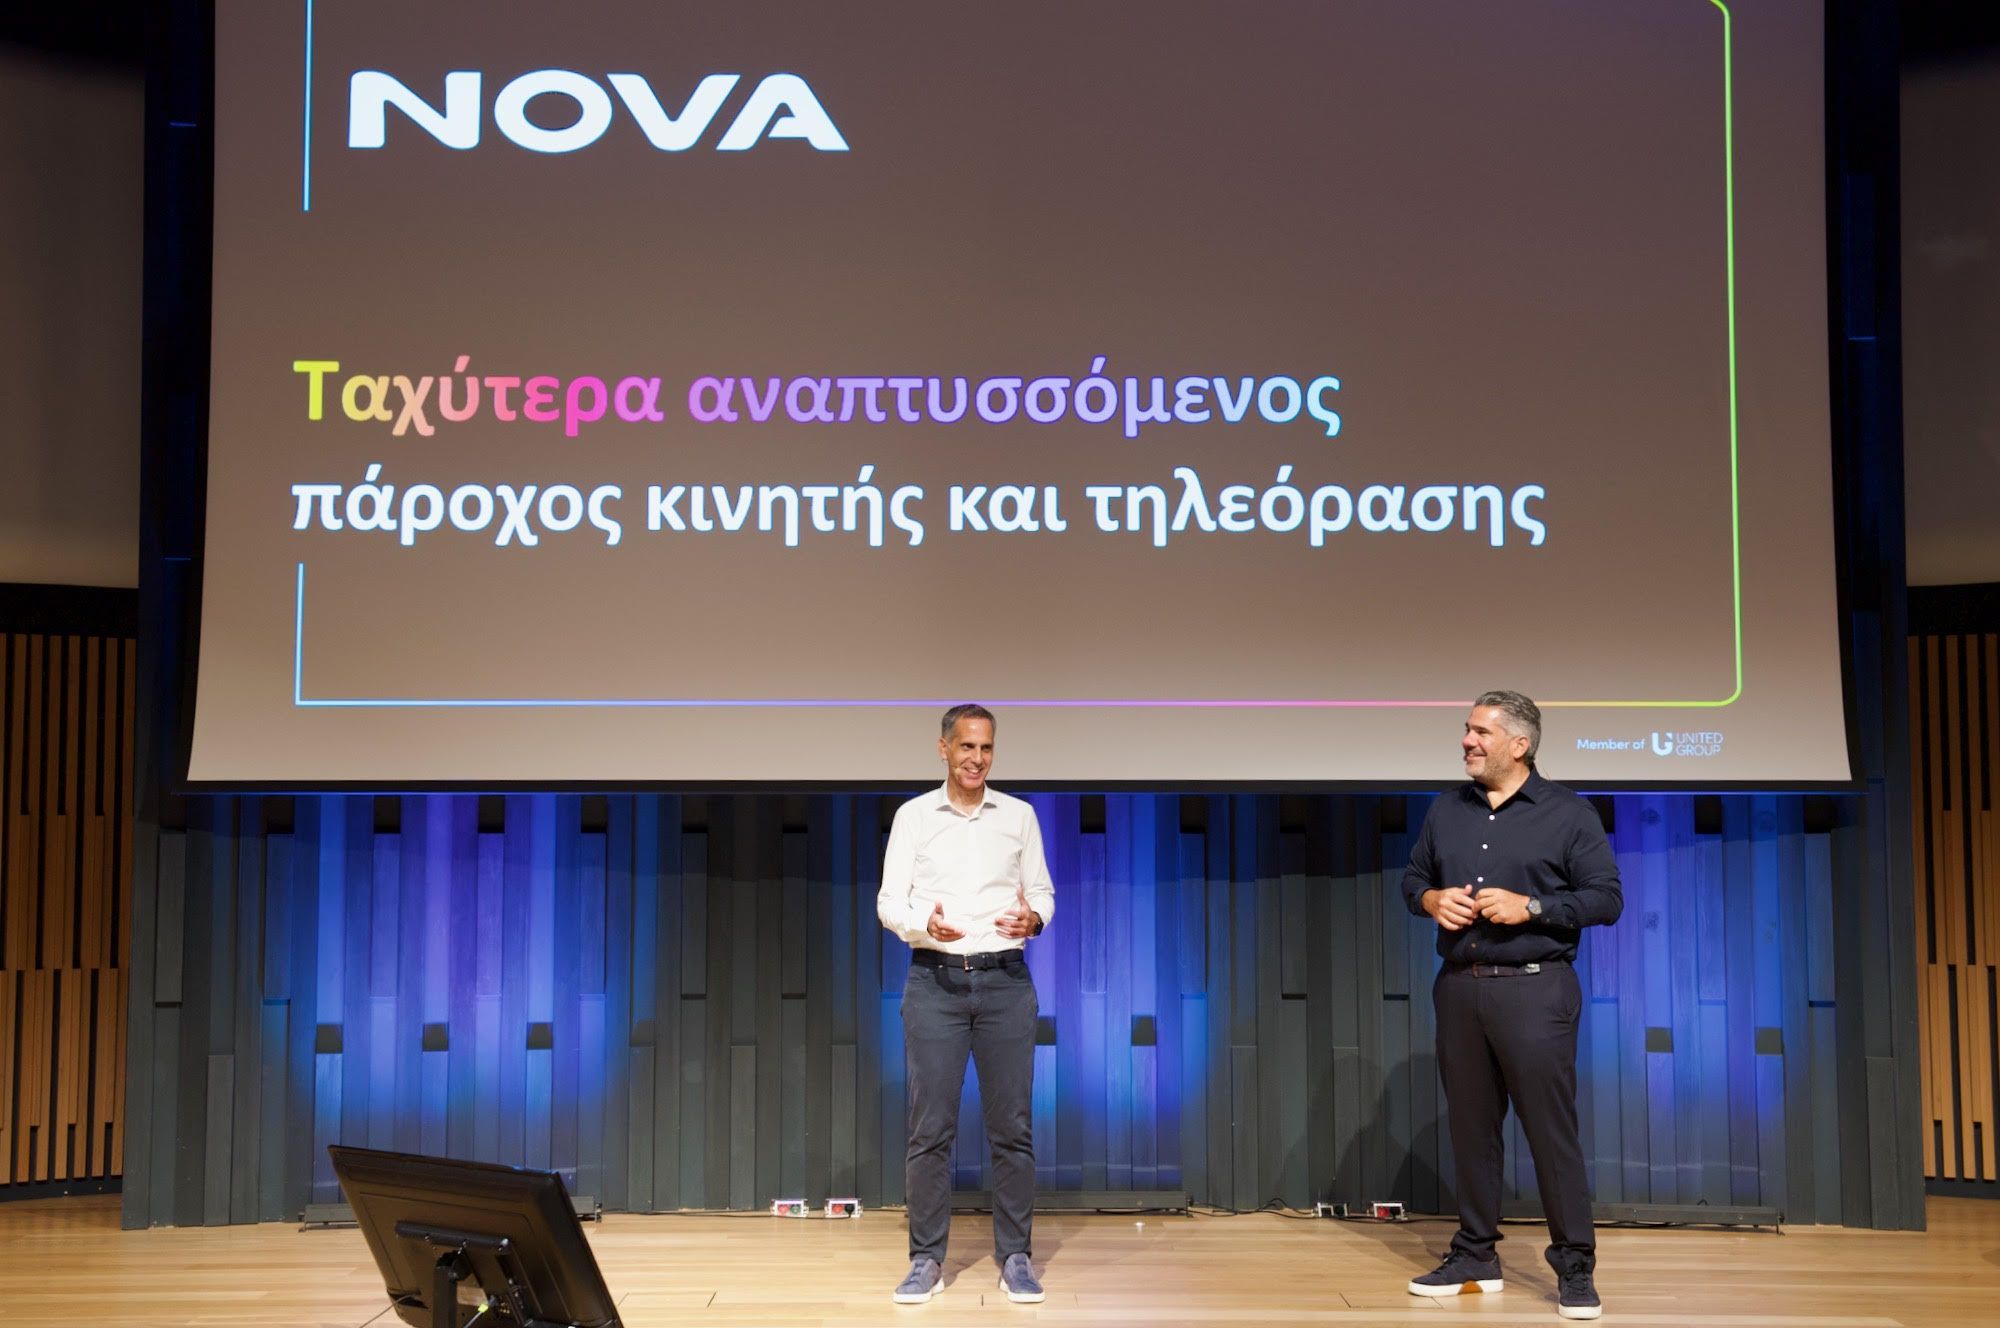 Με 425 χιλιάδες συνδρομητές η Nova στην τηλεόραση